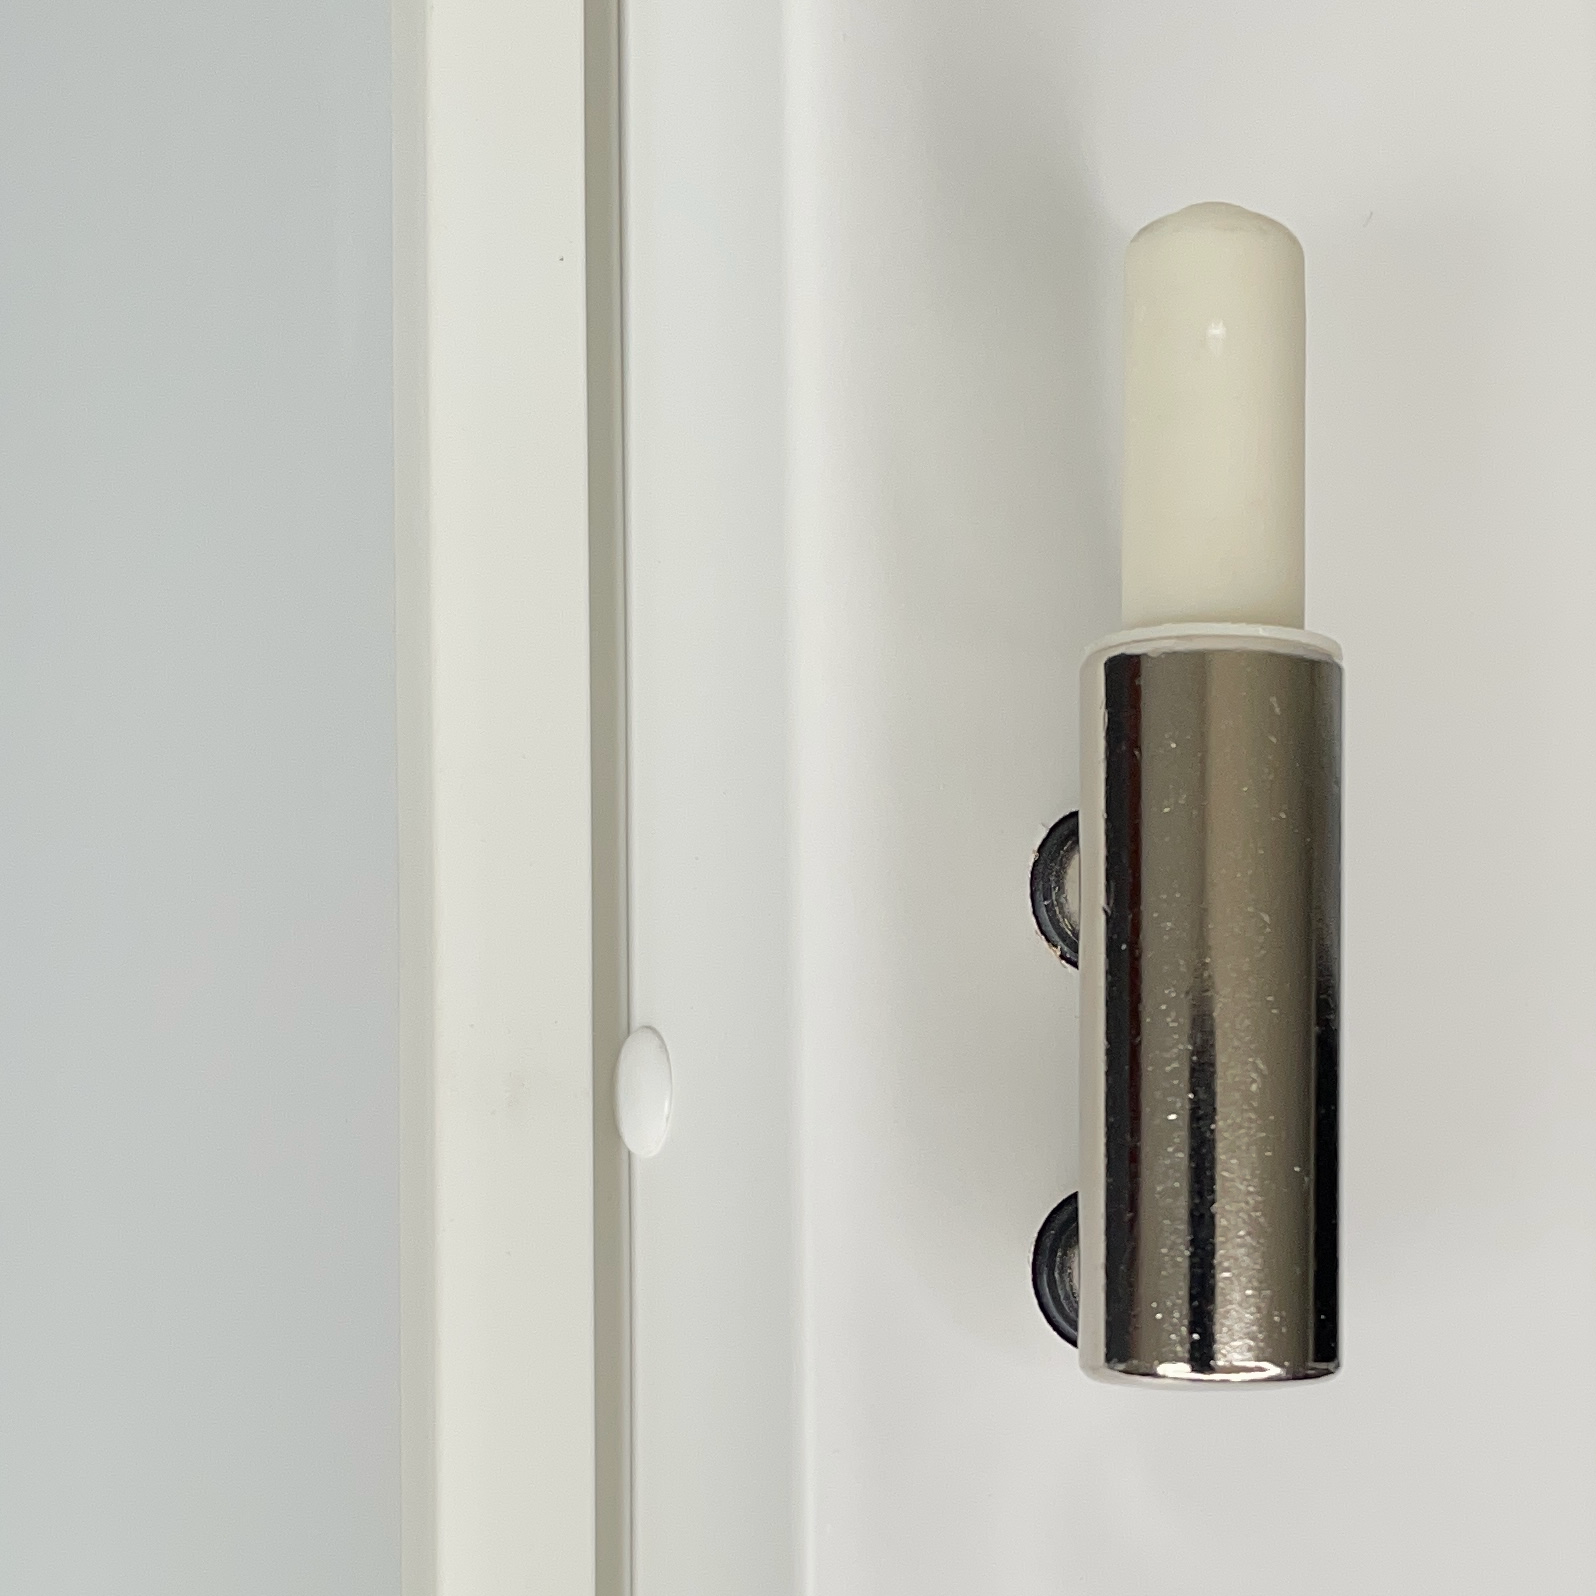 Zimmertür mit Zarge und Lichtausschnitt soft-weiß 2 Rillen Eckkante - Modell Designtür Q21LAB